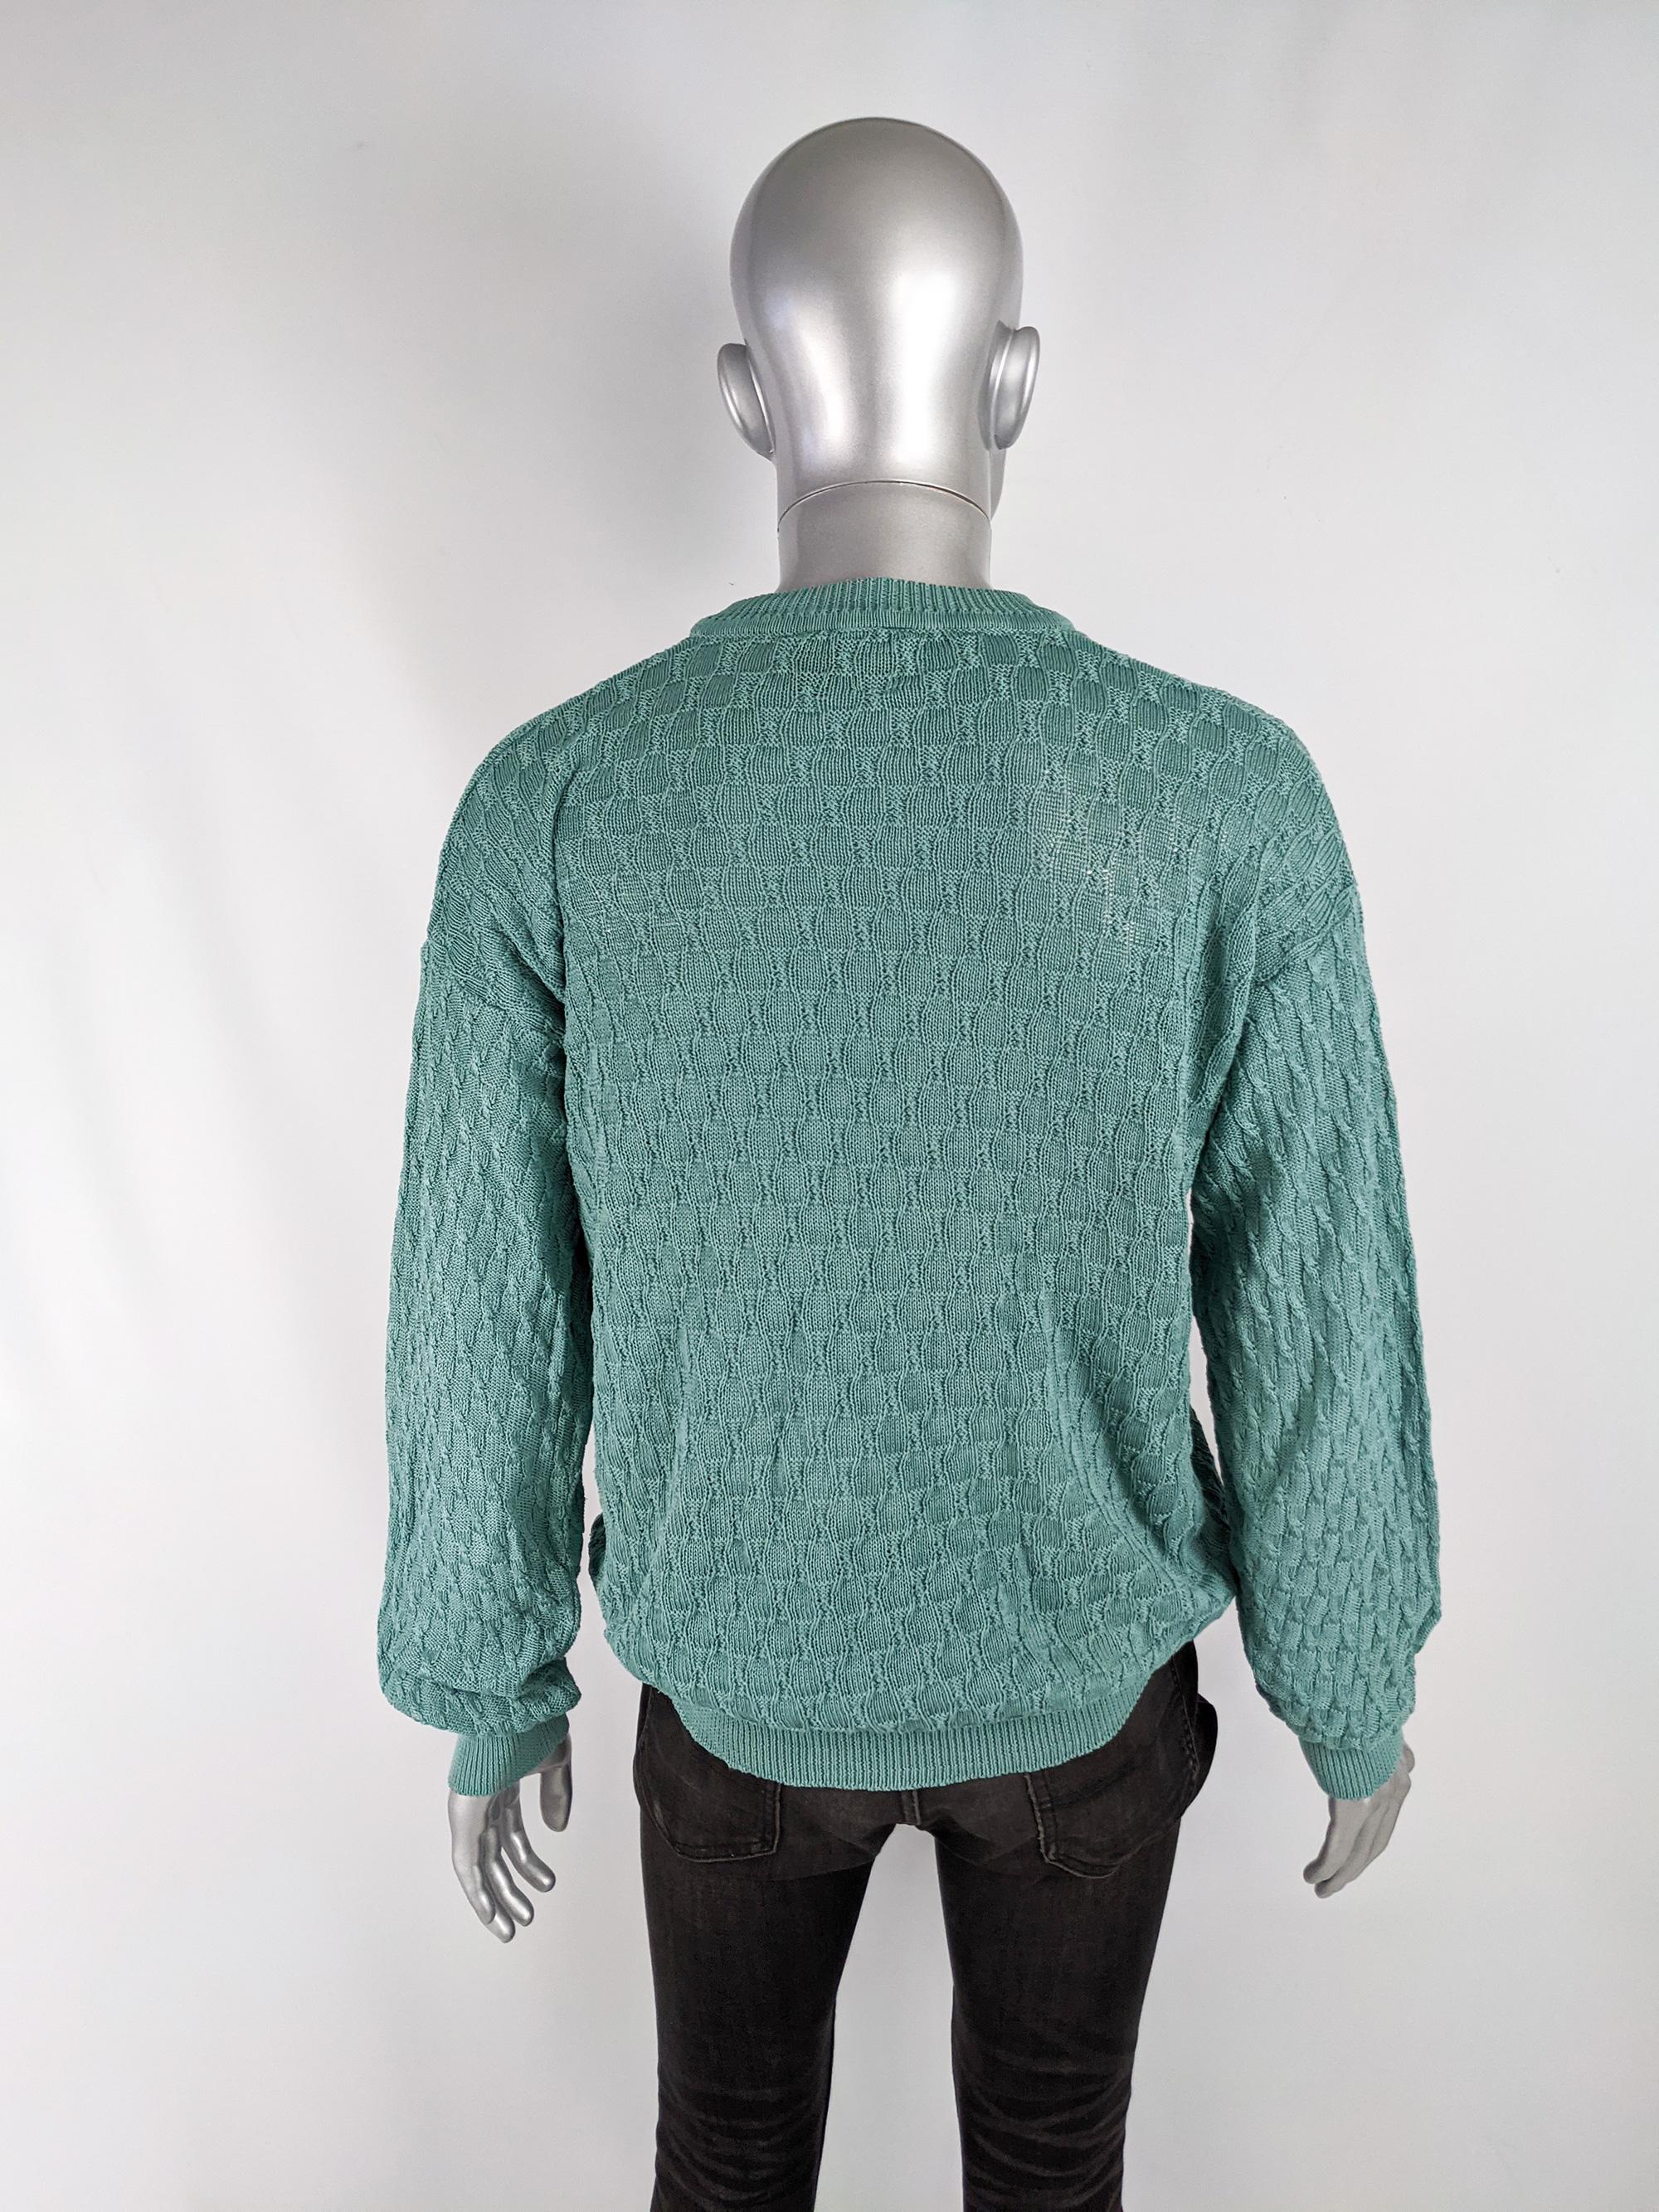 Men's Emanuel Ungaro Vintage Mens Twisted Knit Jumper Sweater, 1980s